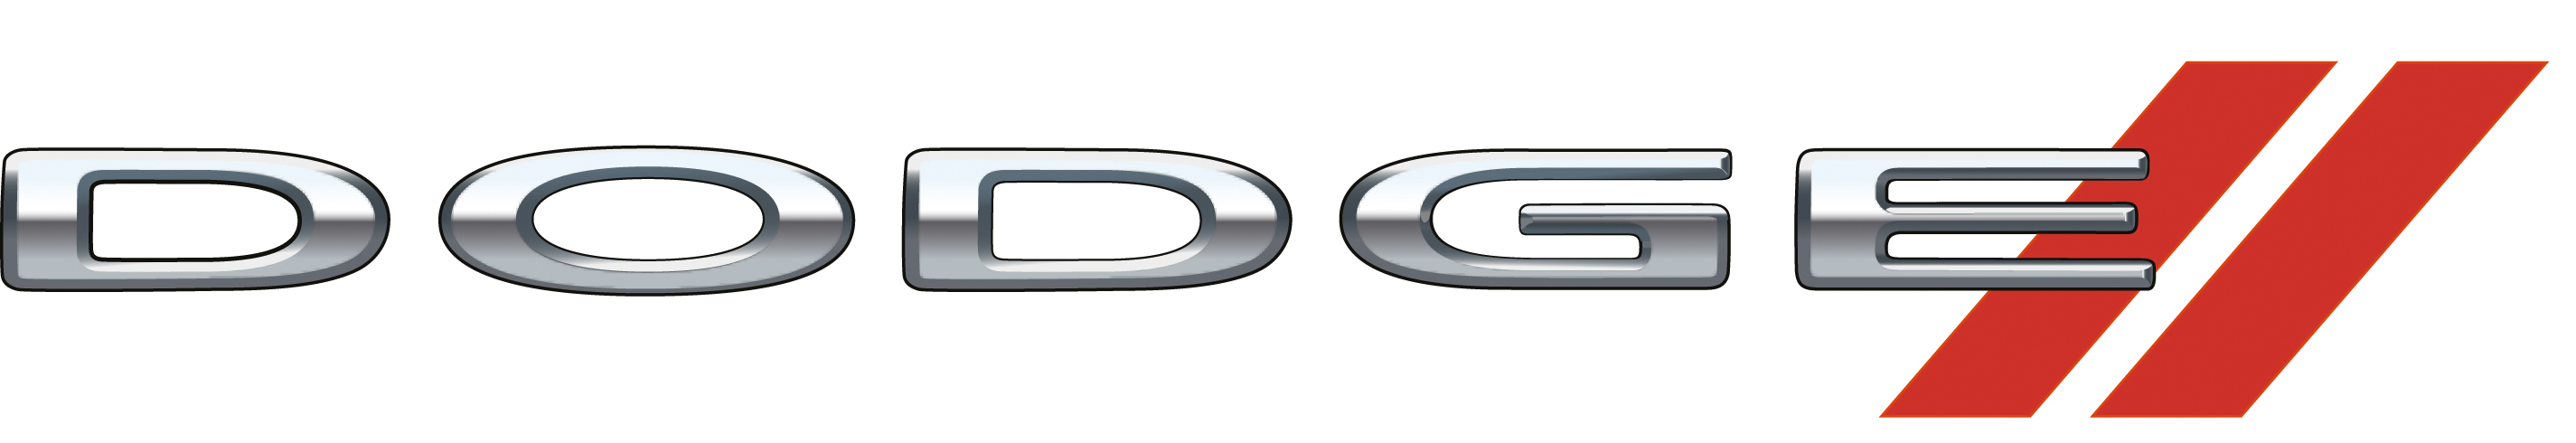 dodge logo, dodge symbol, dodge emblem, car logo